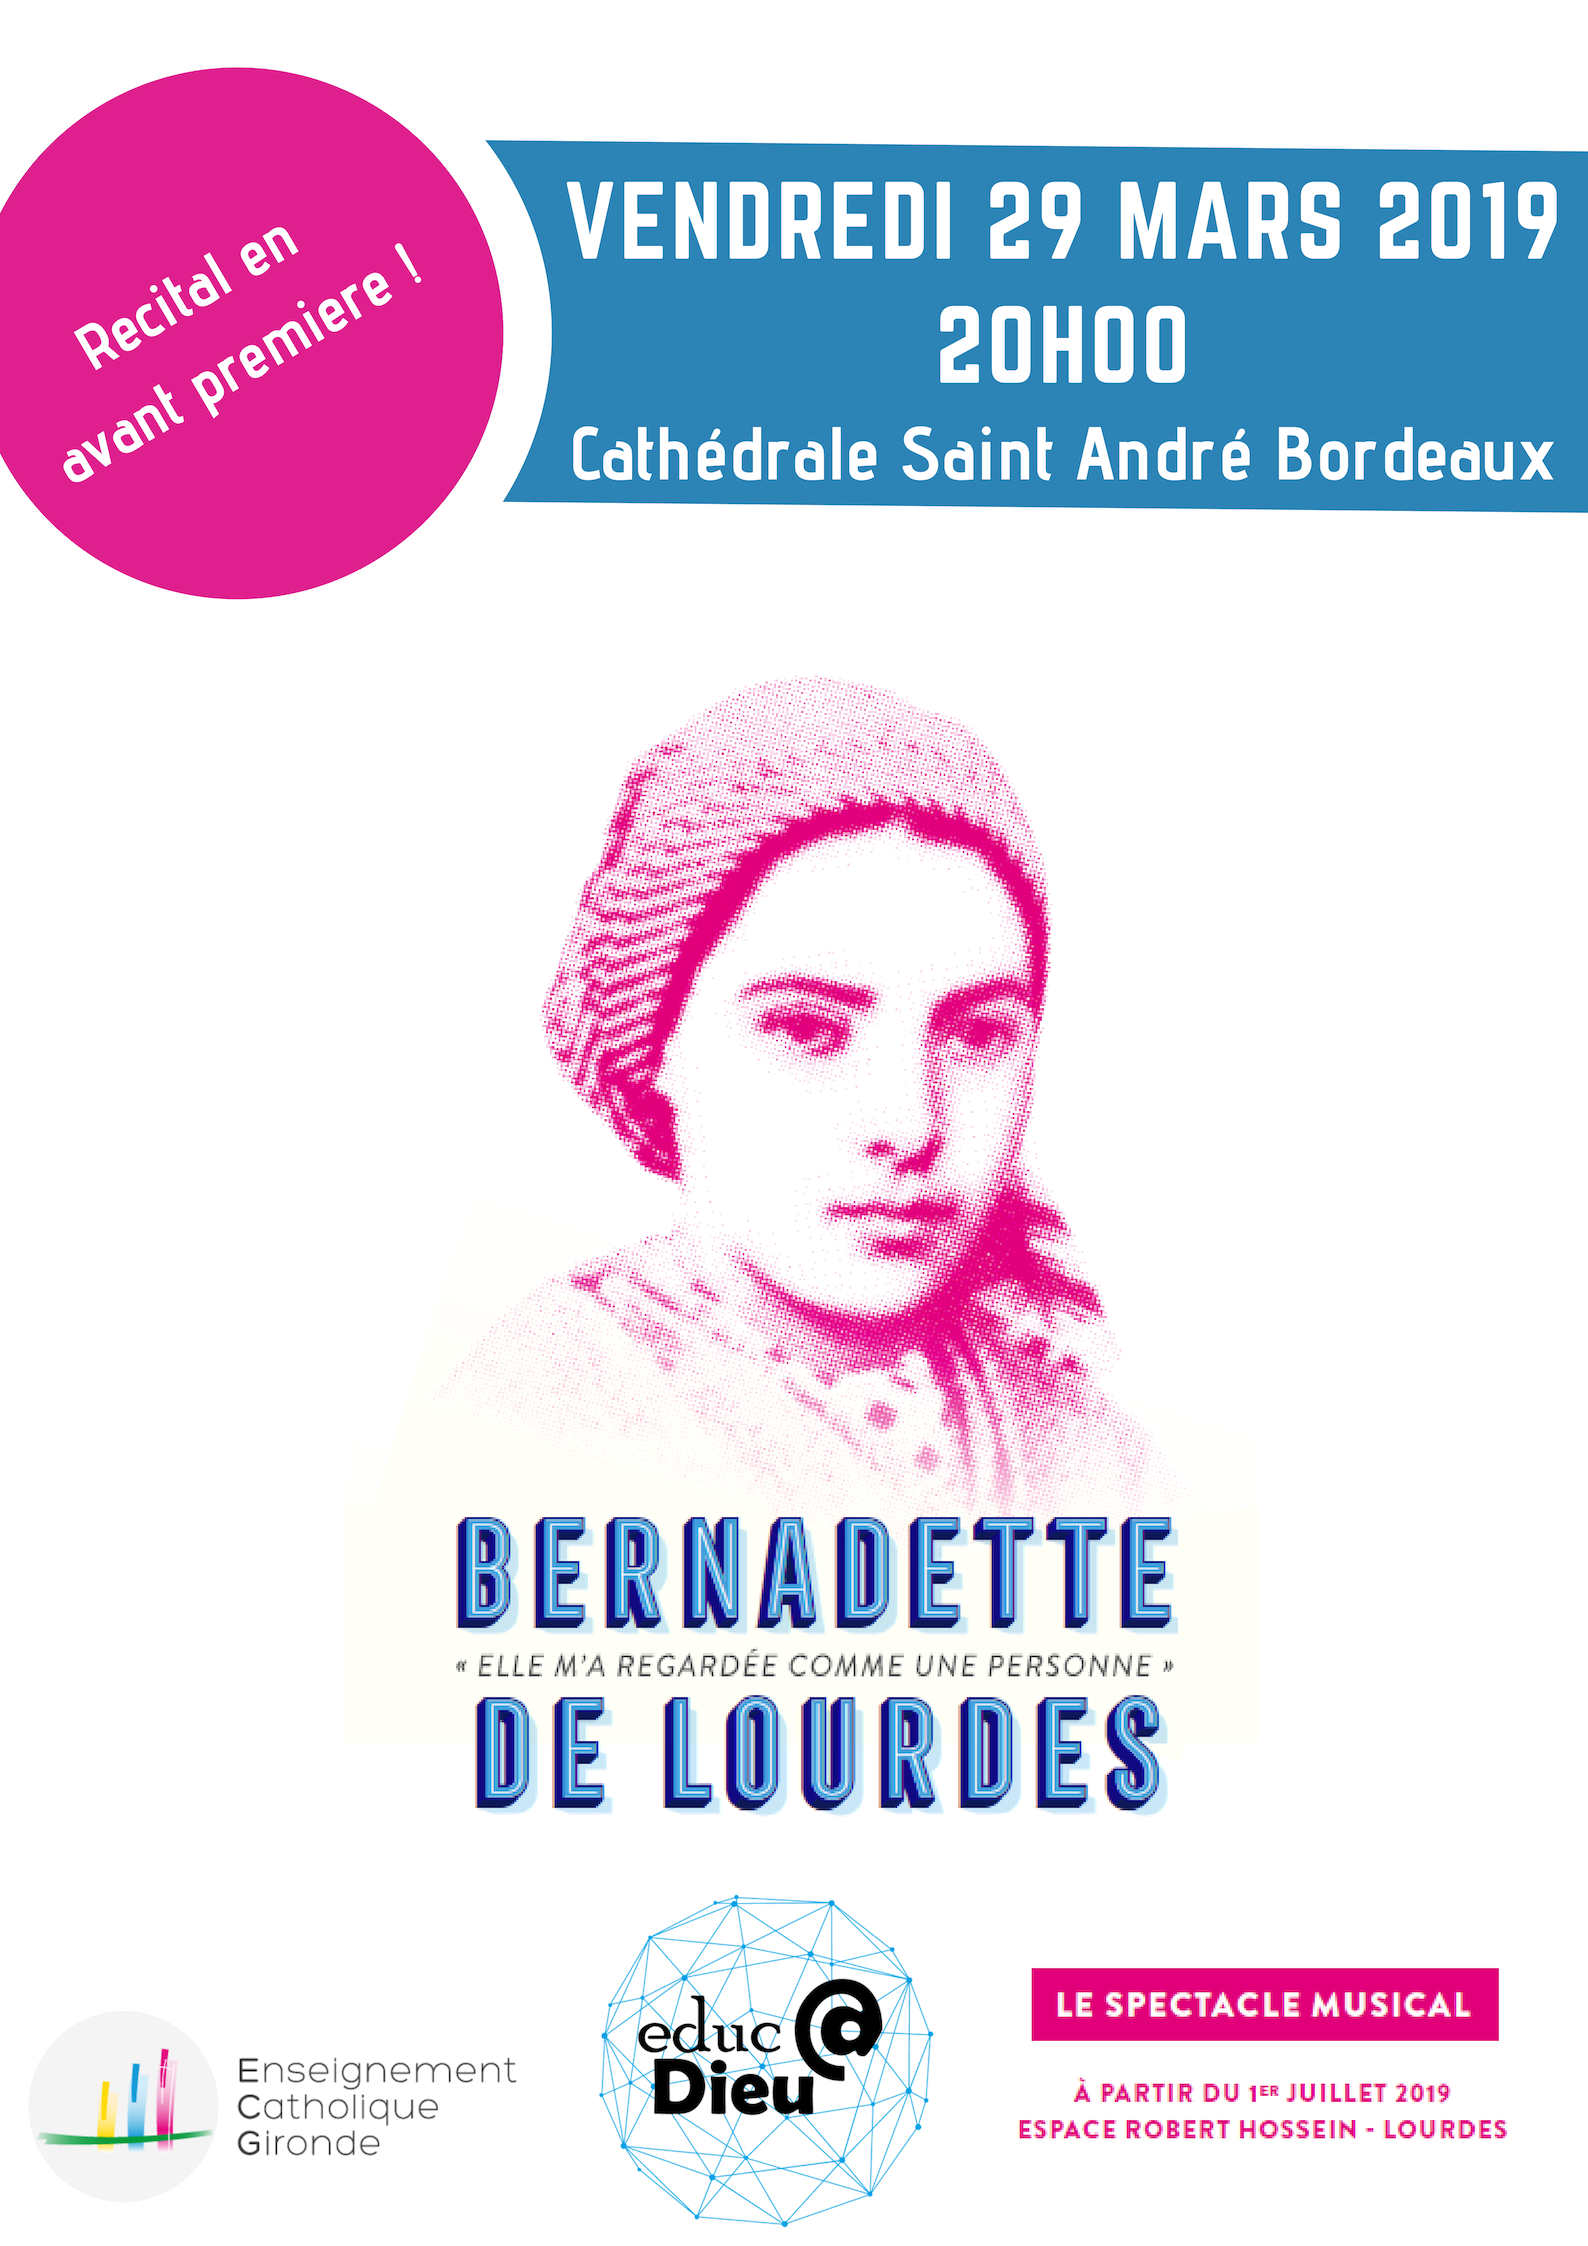 Comédie musicale “Bernadette de Lourdes” le 29 mars 2019 à Bordeaux (33)